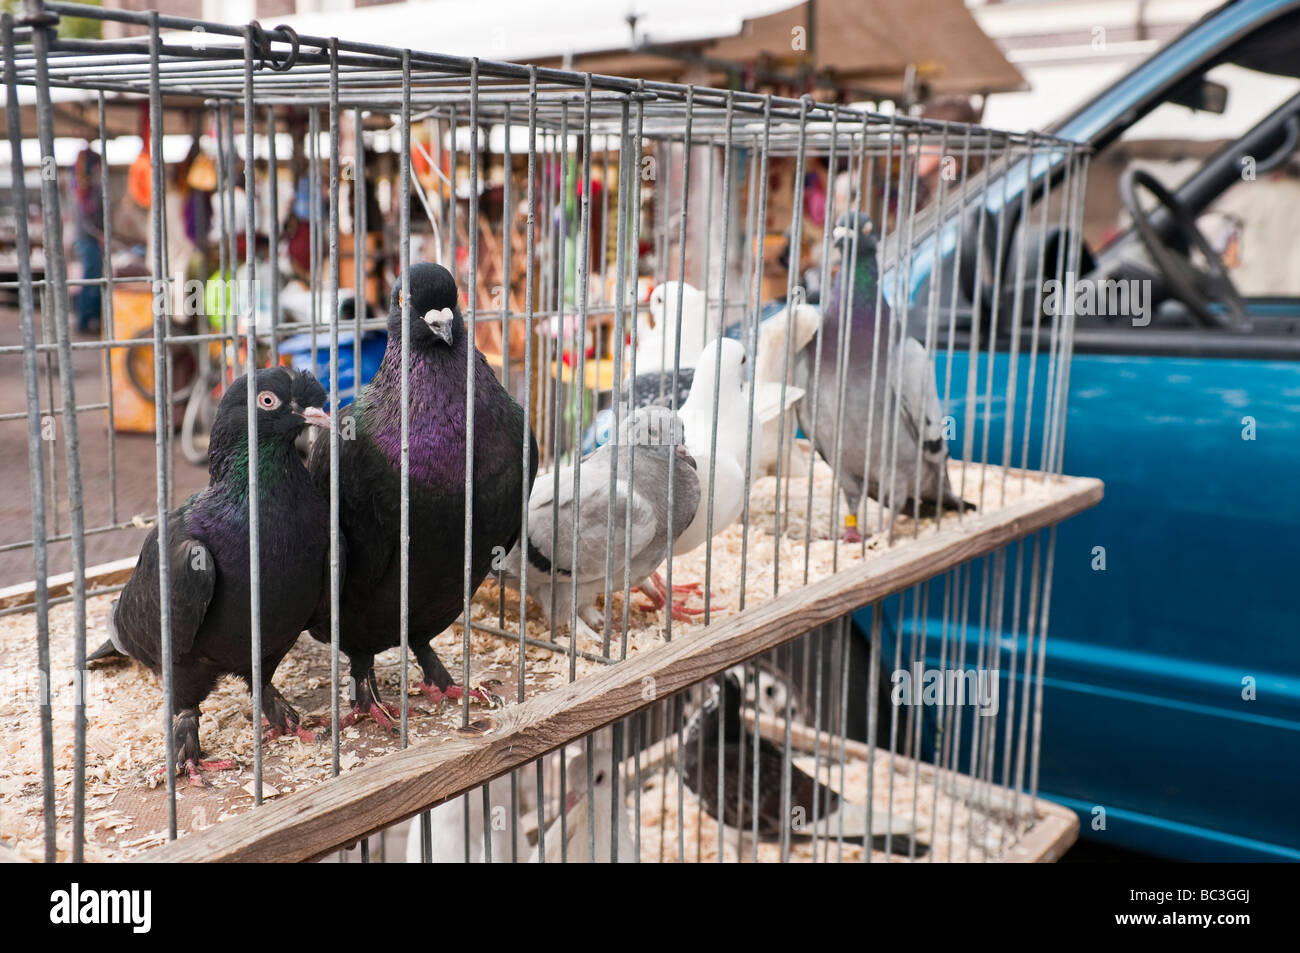 Tauben in einem Käfig zu verkaufen an einem Stand am Noowemarkt Markt  Stockfotografie - Alamy